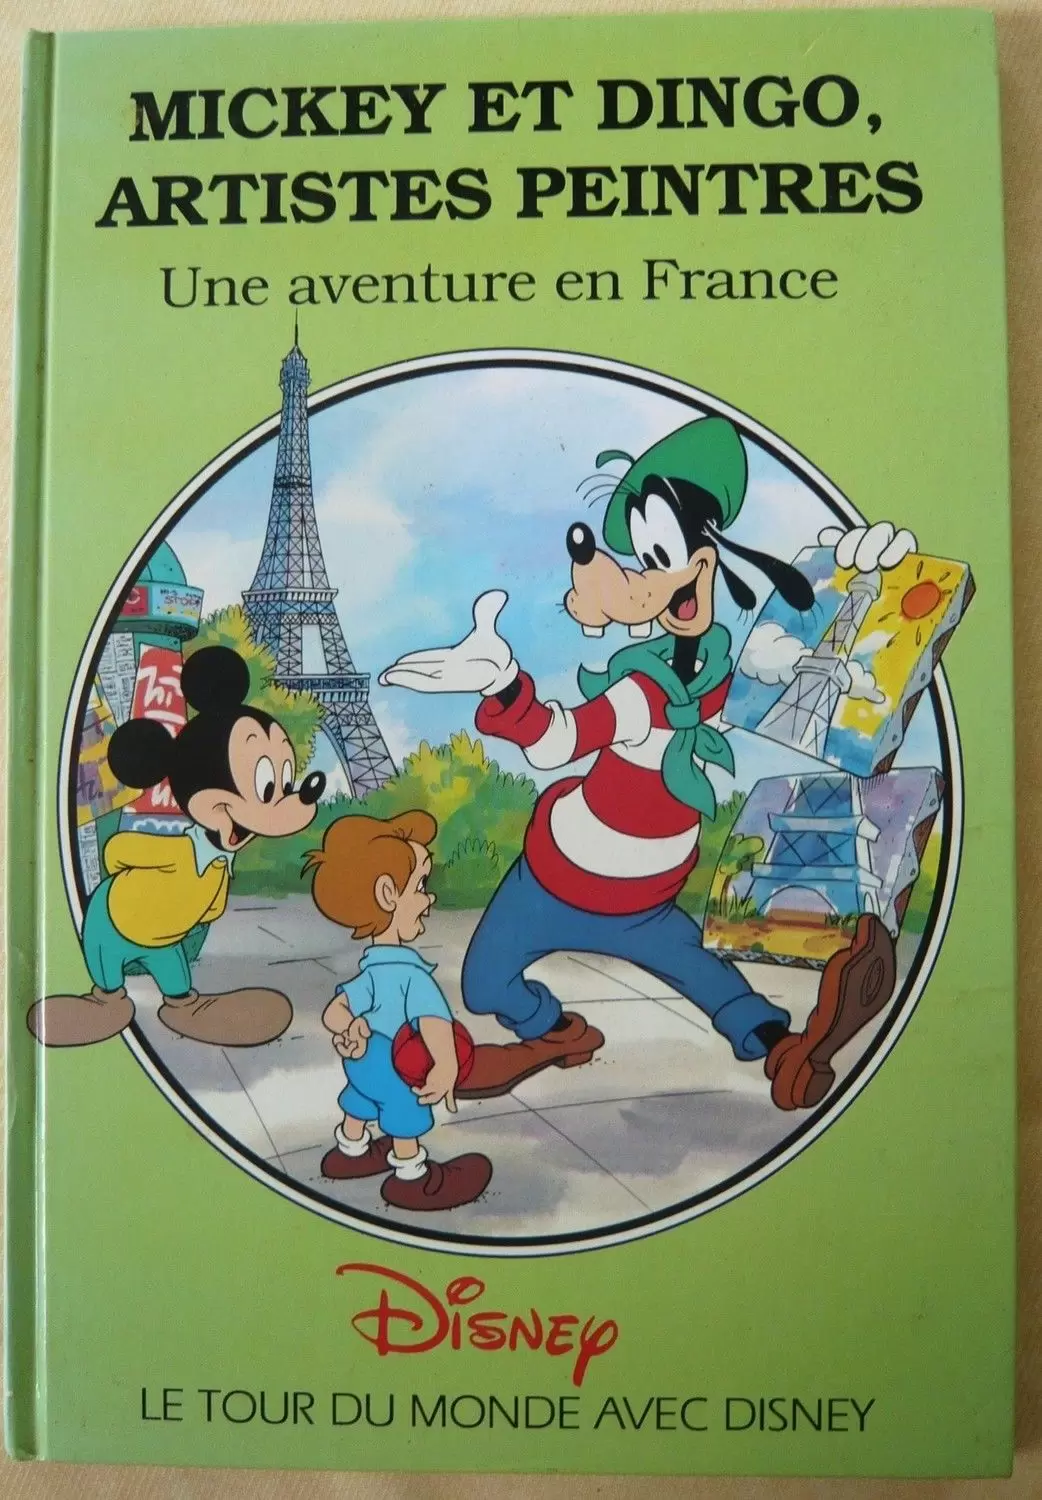 Le tour du monde avec Disney - Mickey et Dingo artistes peintres - Une aventure en France